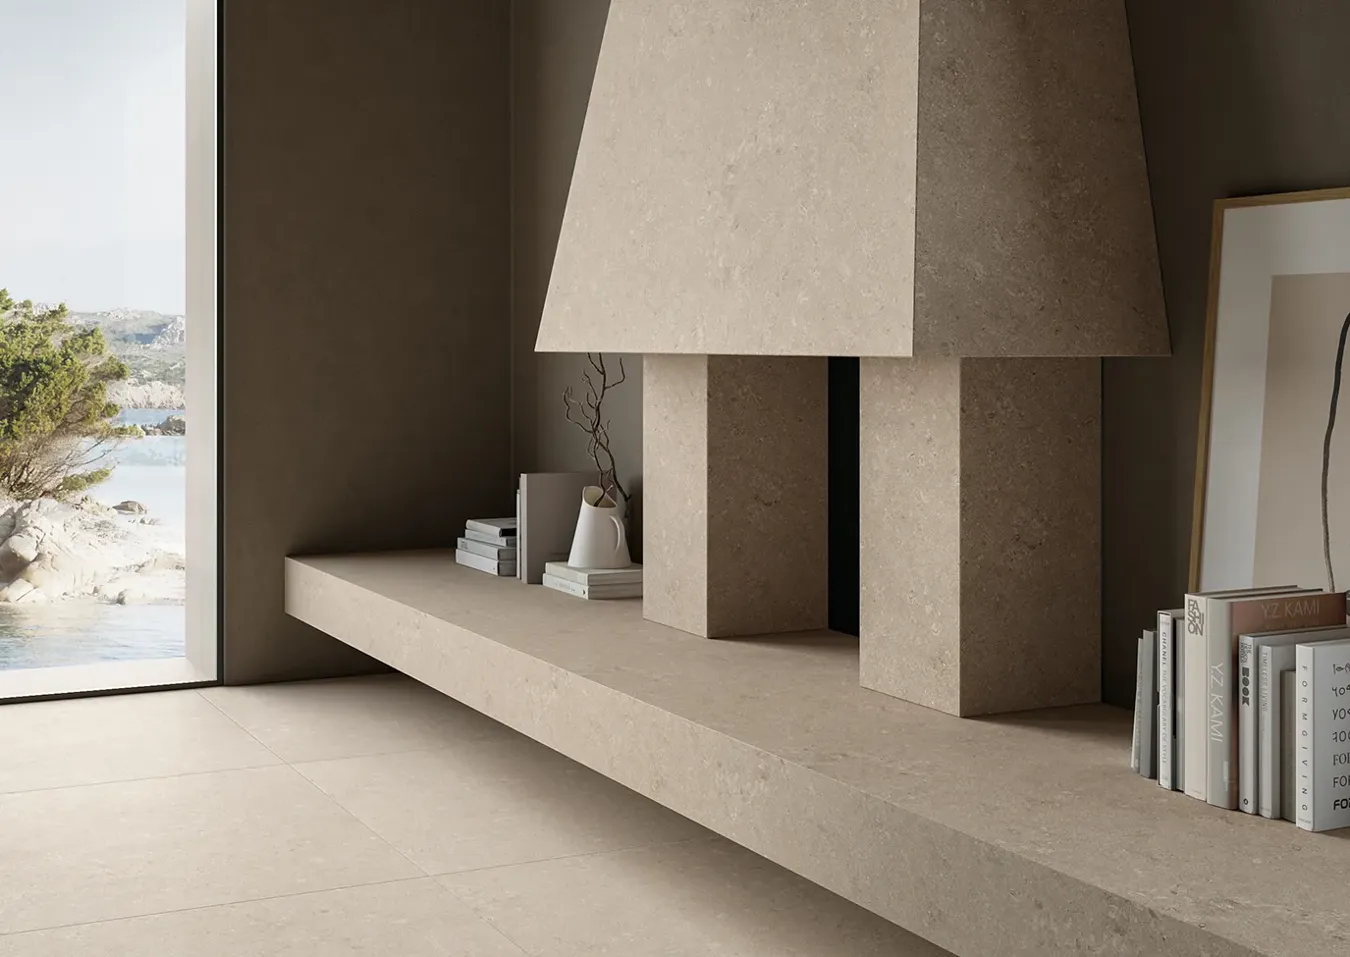 Diseño de interiores moderno con chimenea revestida en baldosas efecto piedra color beige marfil, mobiliario minimalista y vista panorámica